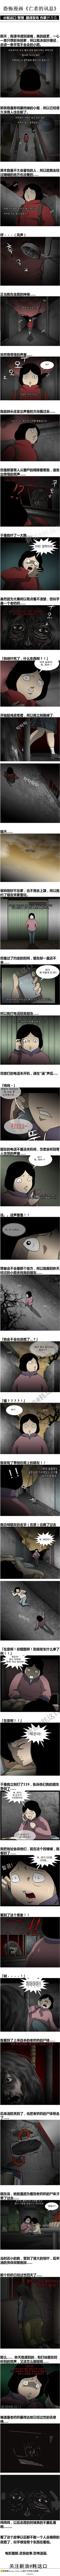 韩国恐怖漫画《亡者的讯息》根据真人真事画...